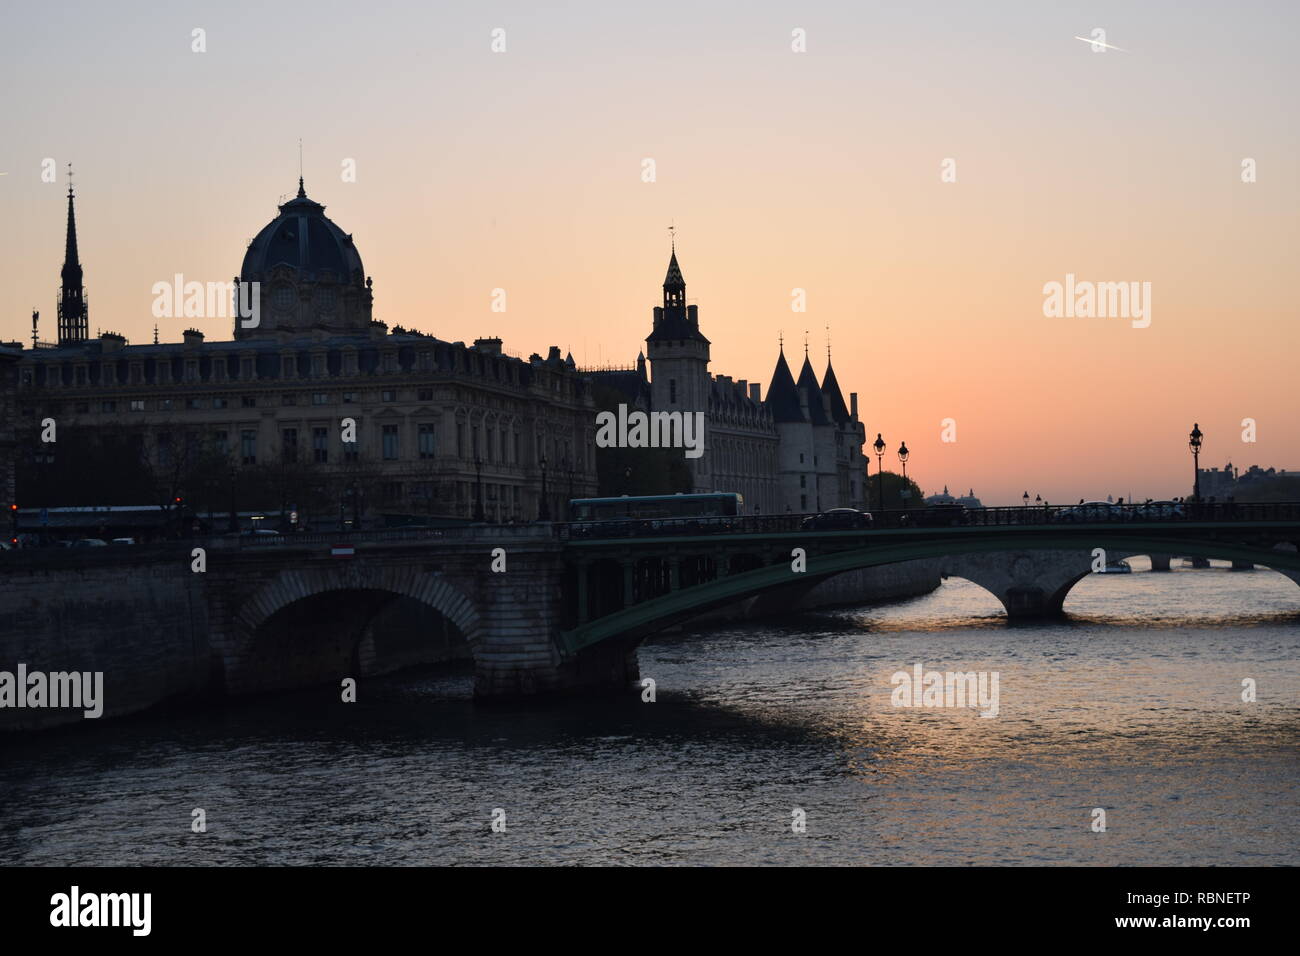 paesaggio urbano di uno dei tanti ponti sulla senna a parigi sede di tanto turismo Stockfoto